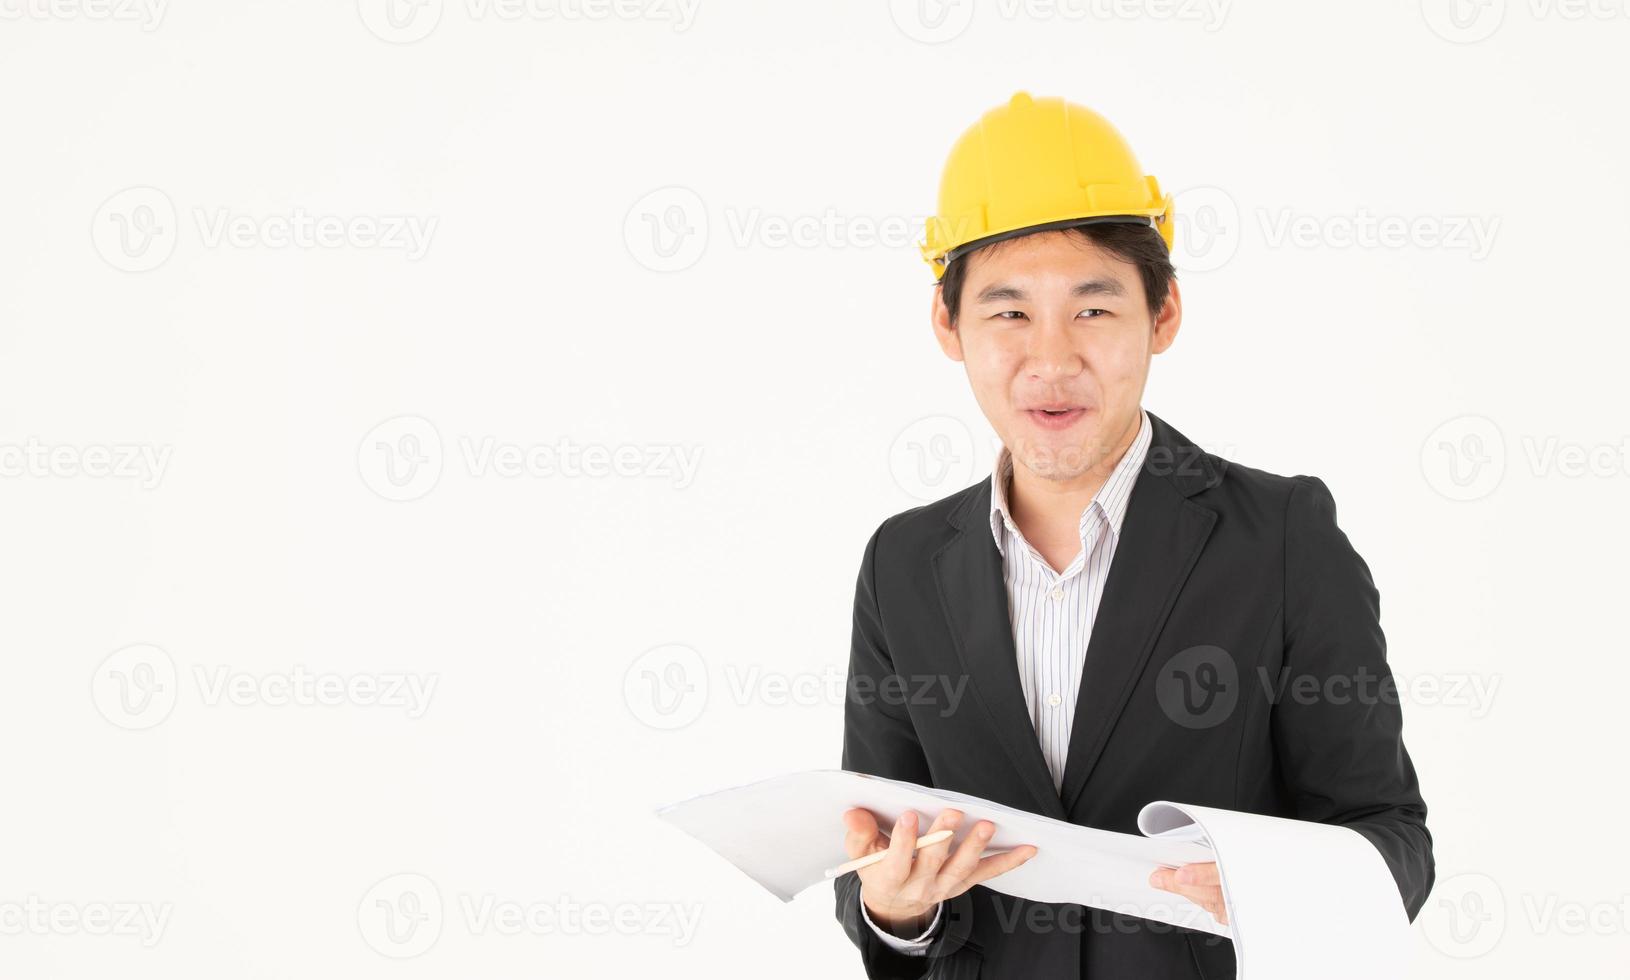 engenheiro civil masculino asiático acompanha o andamento da construção foto